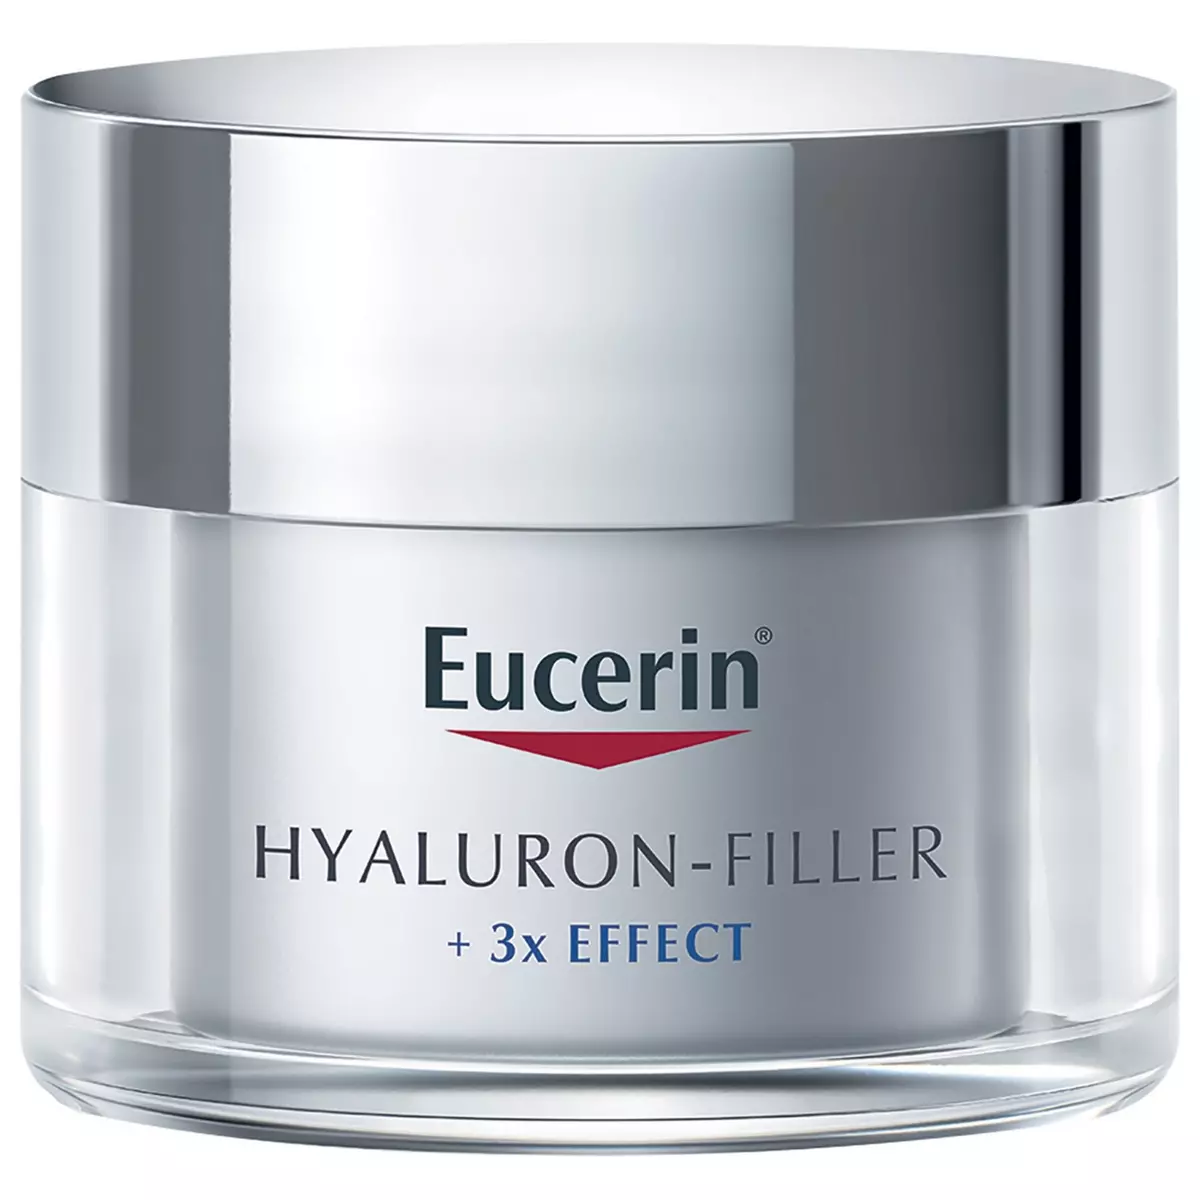 EUCERIN Hyaluron filler +3 effect soin de jour SPF30 tous types de peaux 50ml